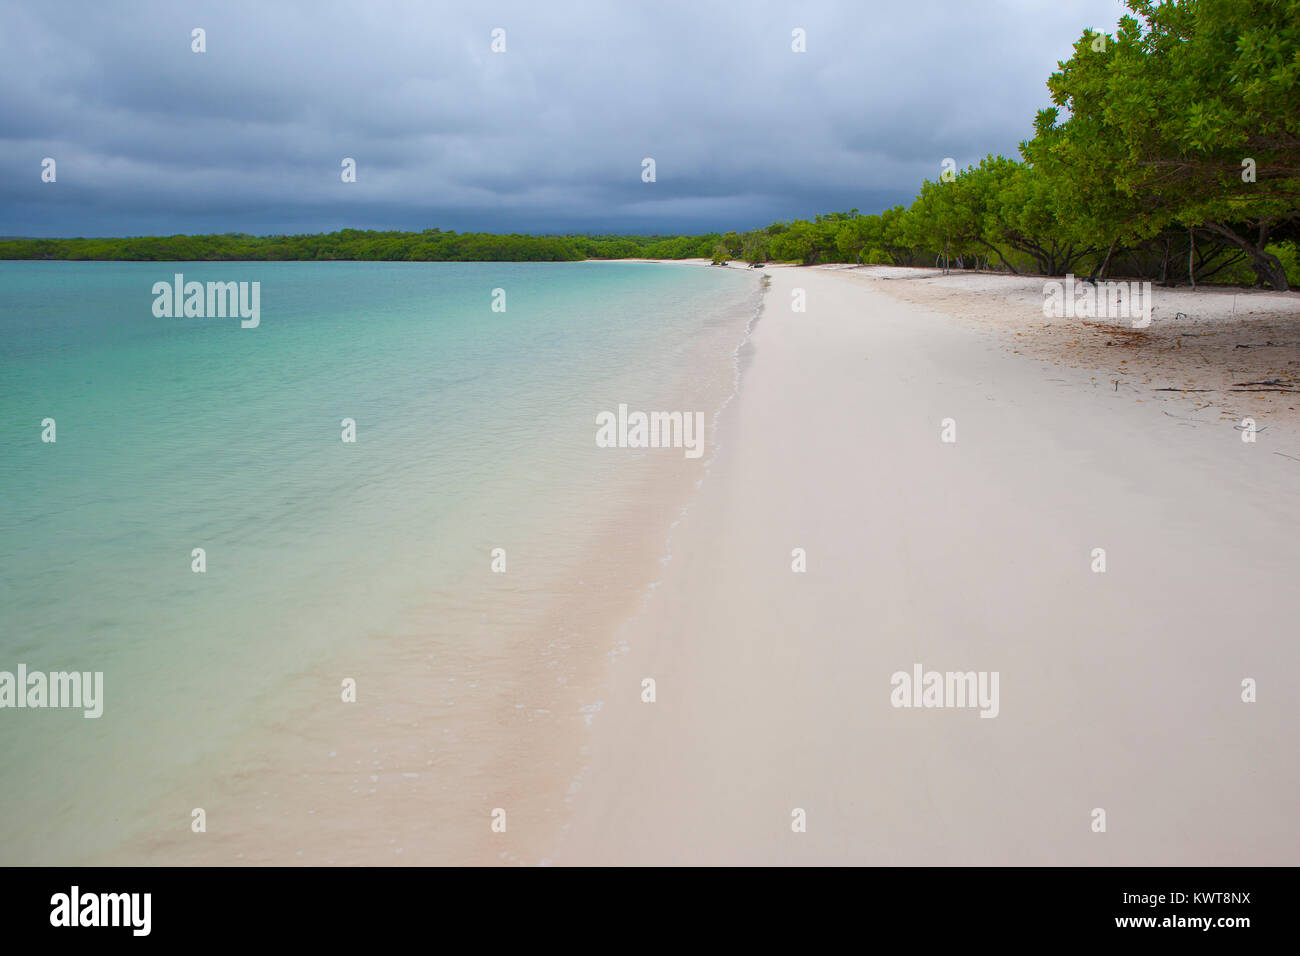 Un vide, une plage de sable blanc sur l'île de Santra Cruz dans les îles Galapagos. Banque D'Images